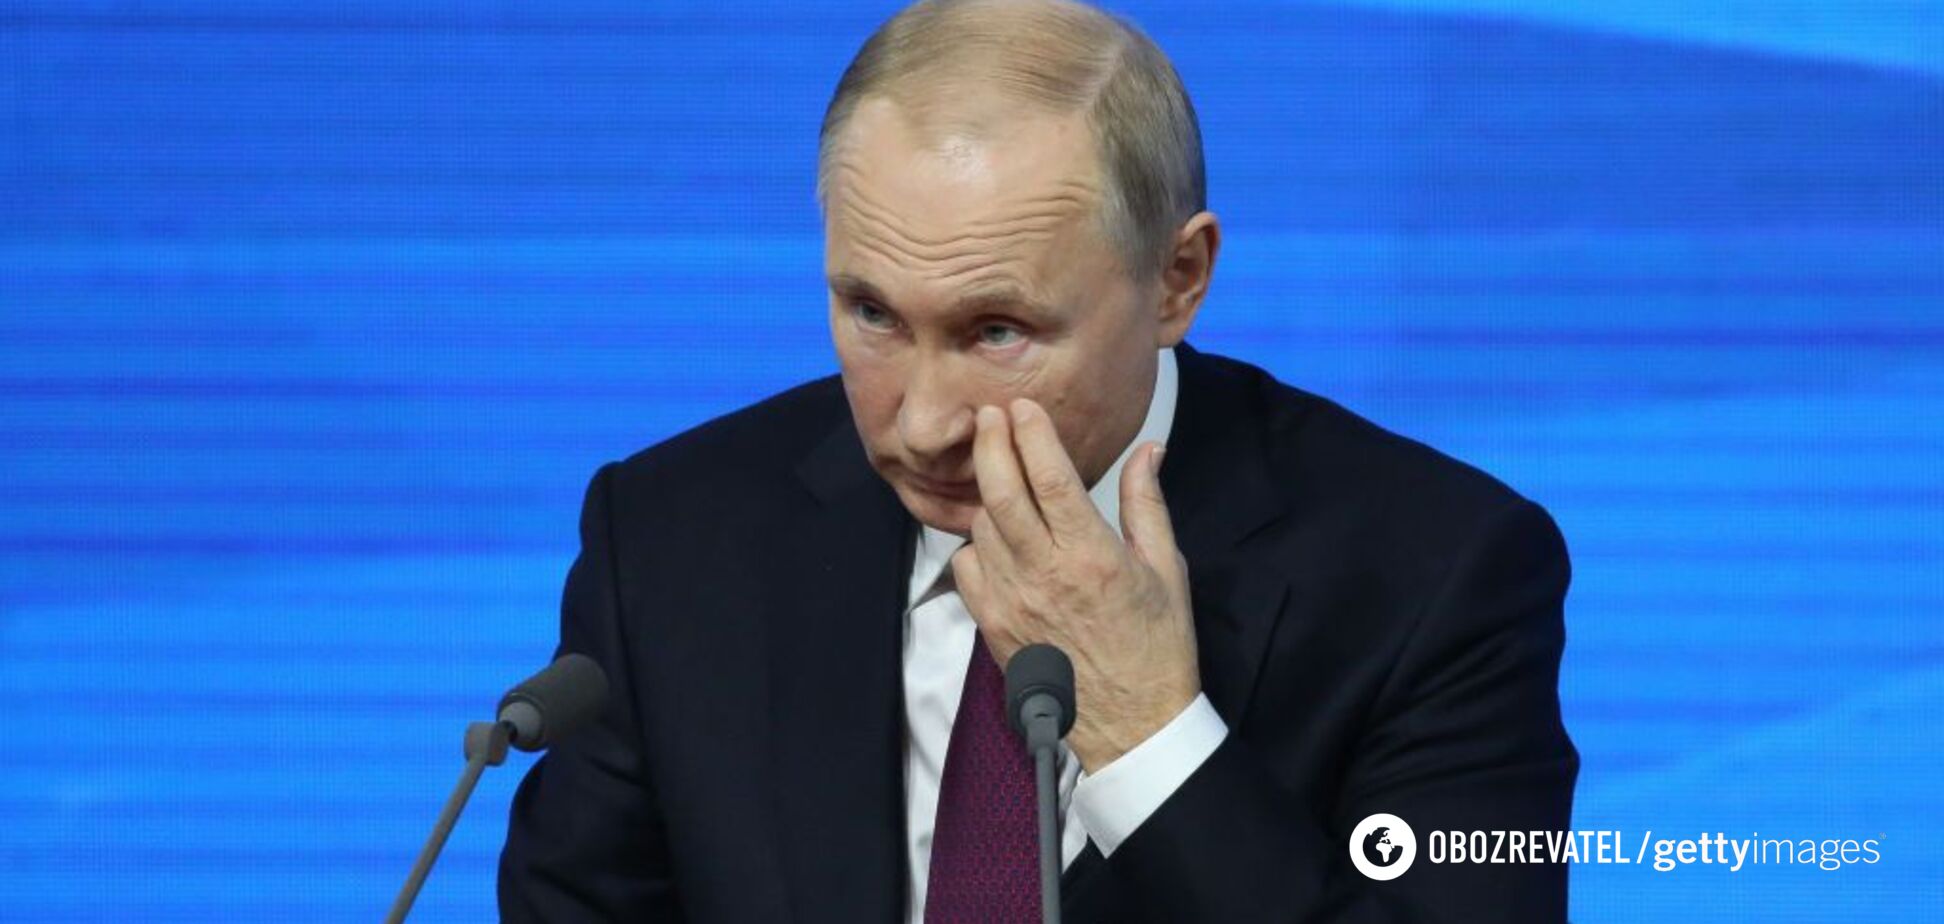 'Этот год может не пережить': в России заявили об очередном обвале рейтинга Путина